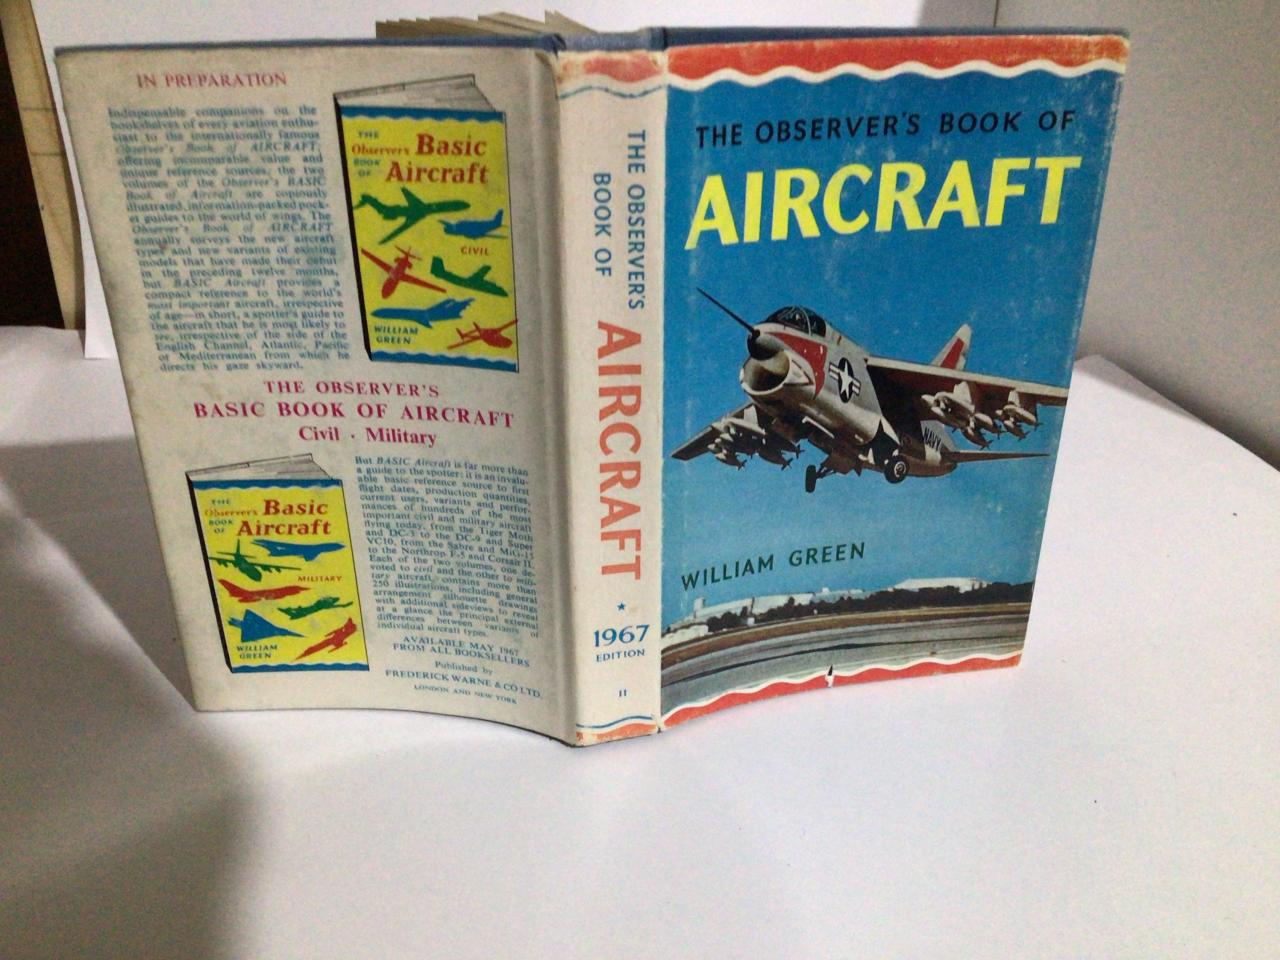 An aviator's field book